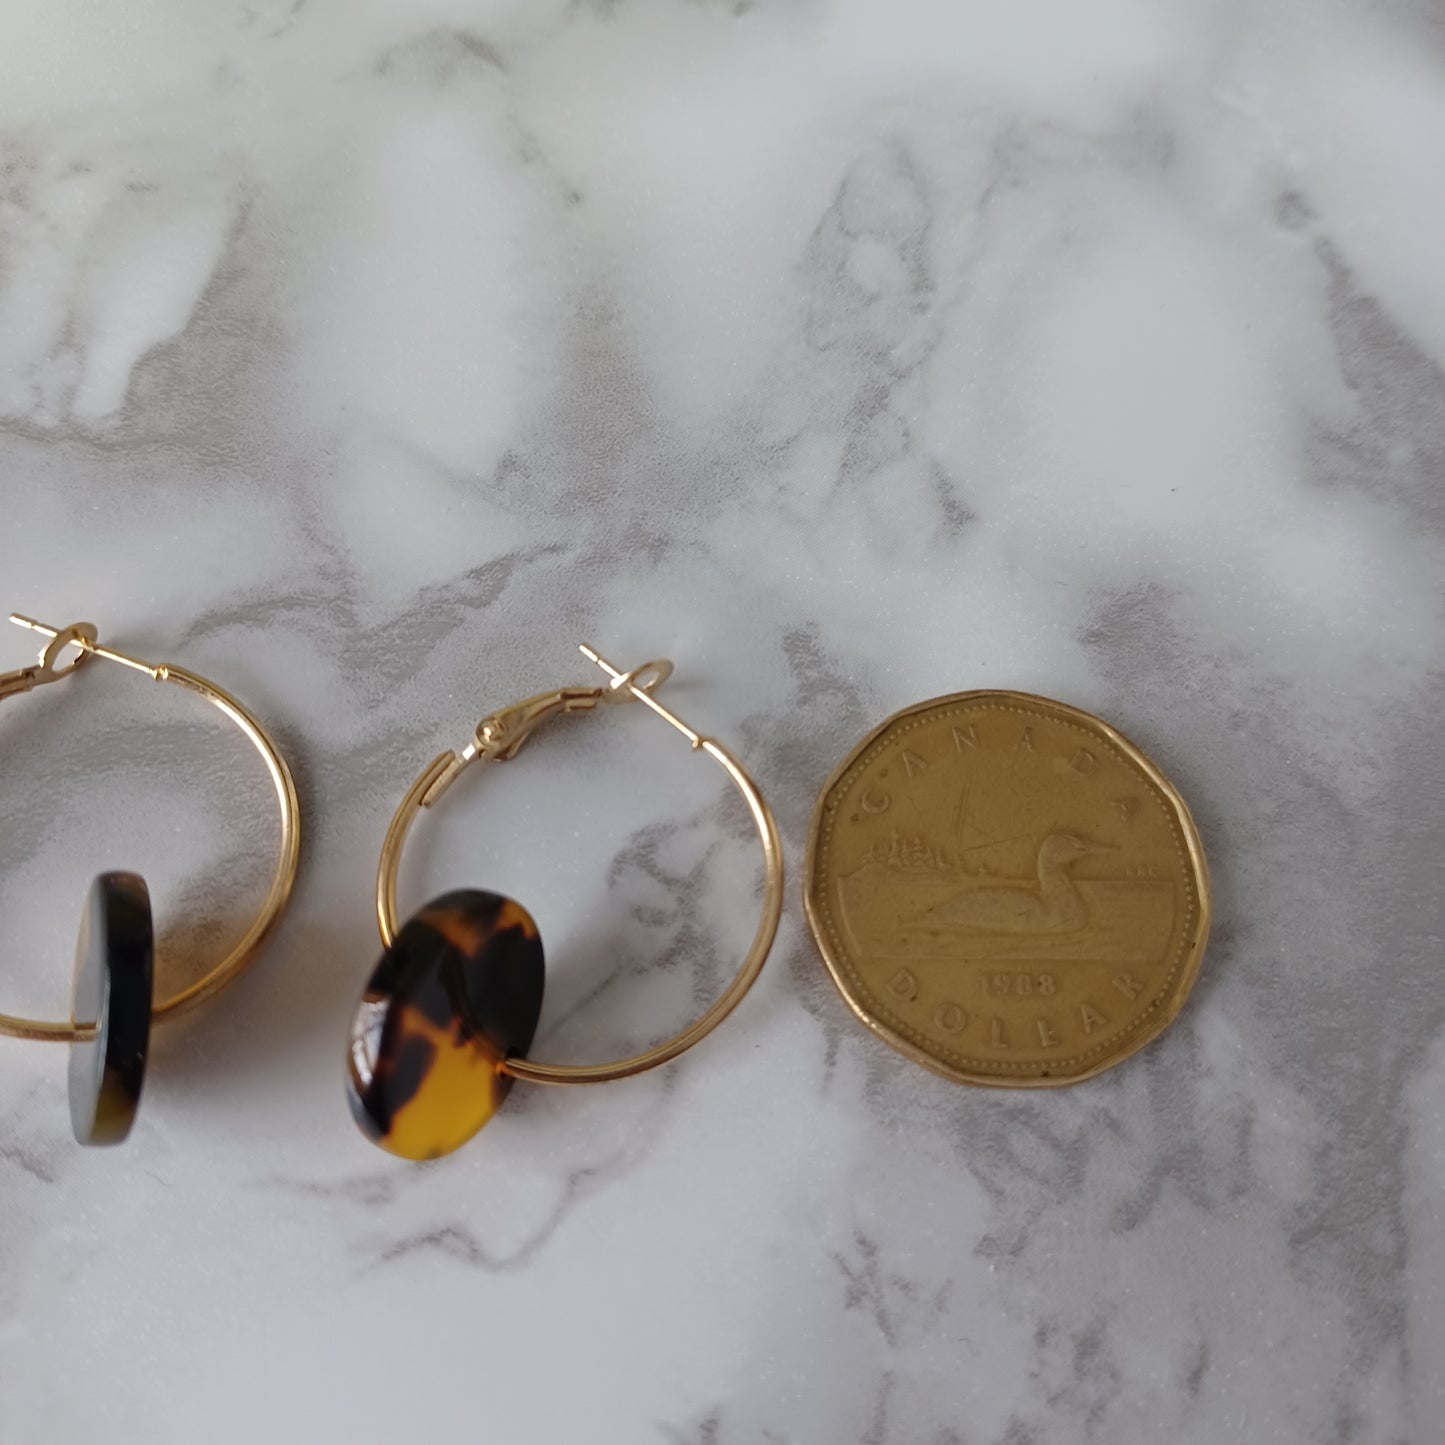 Boucles d'oreilles anneaux or ronds tacheté-ocre-noir et brun/Spotted-ochre-black and brown round gold rings earrings